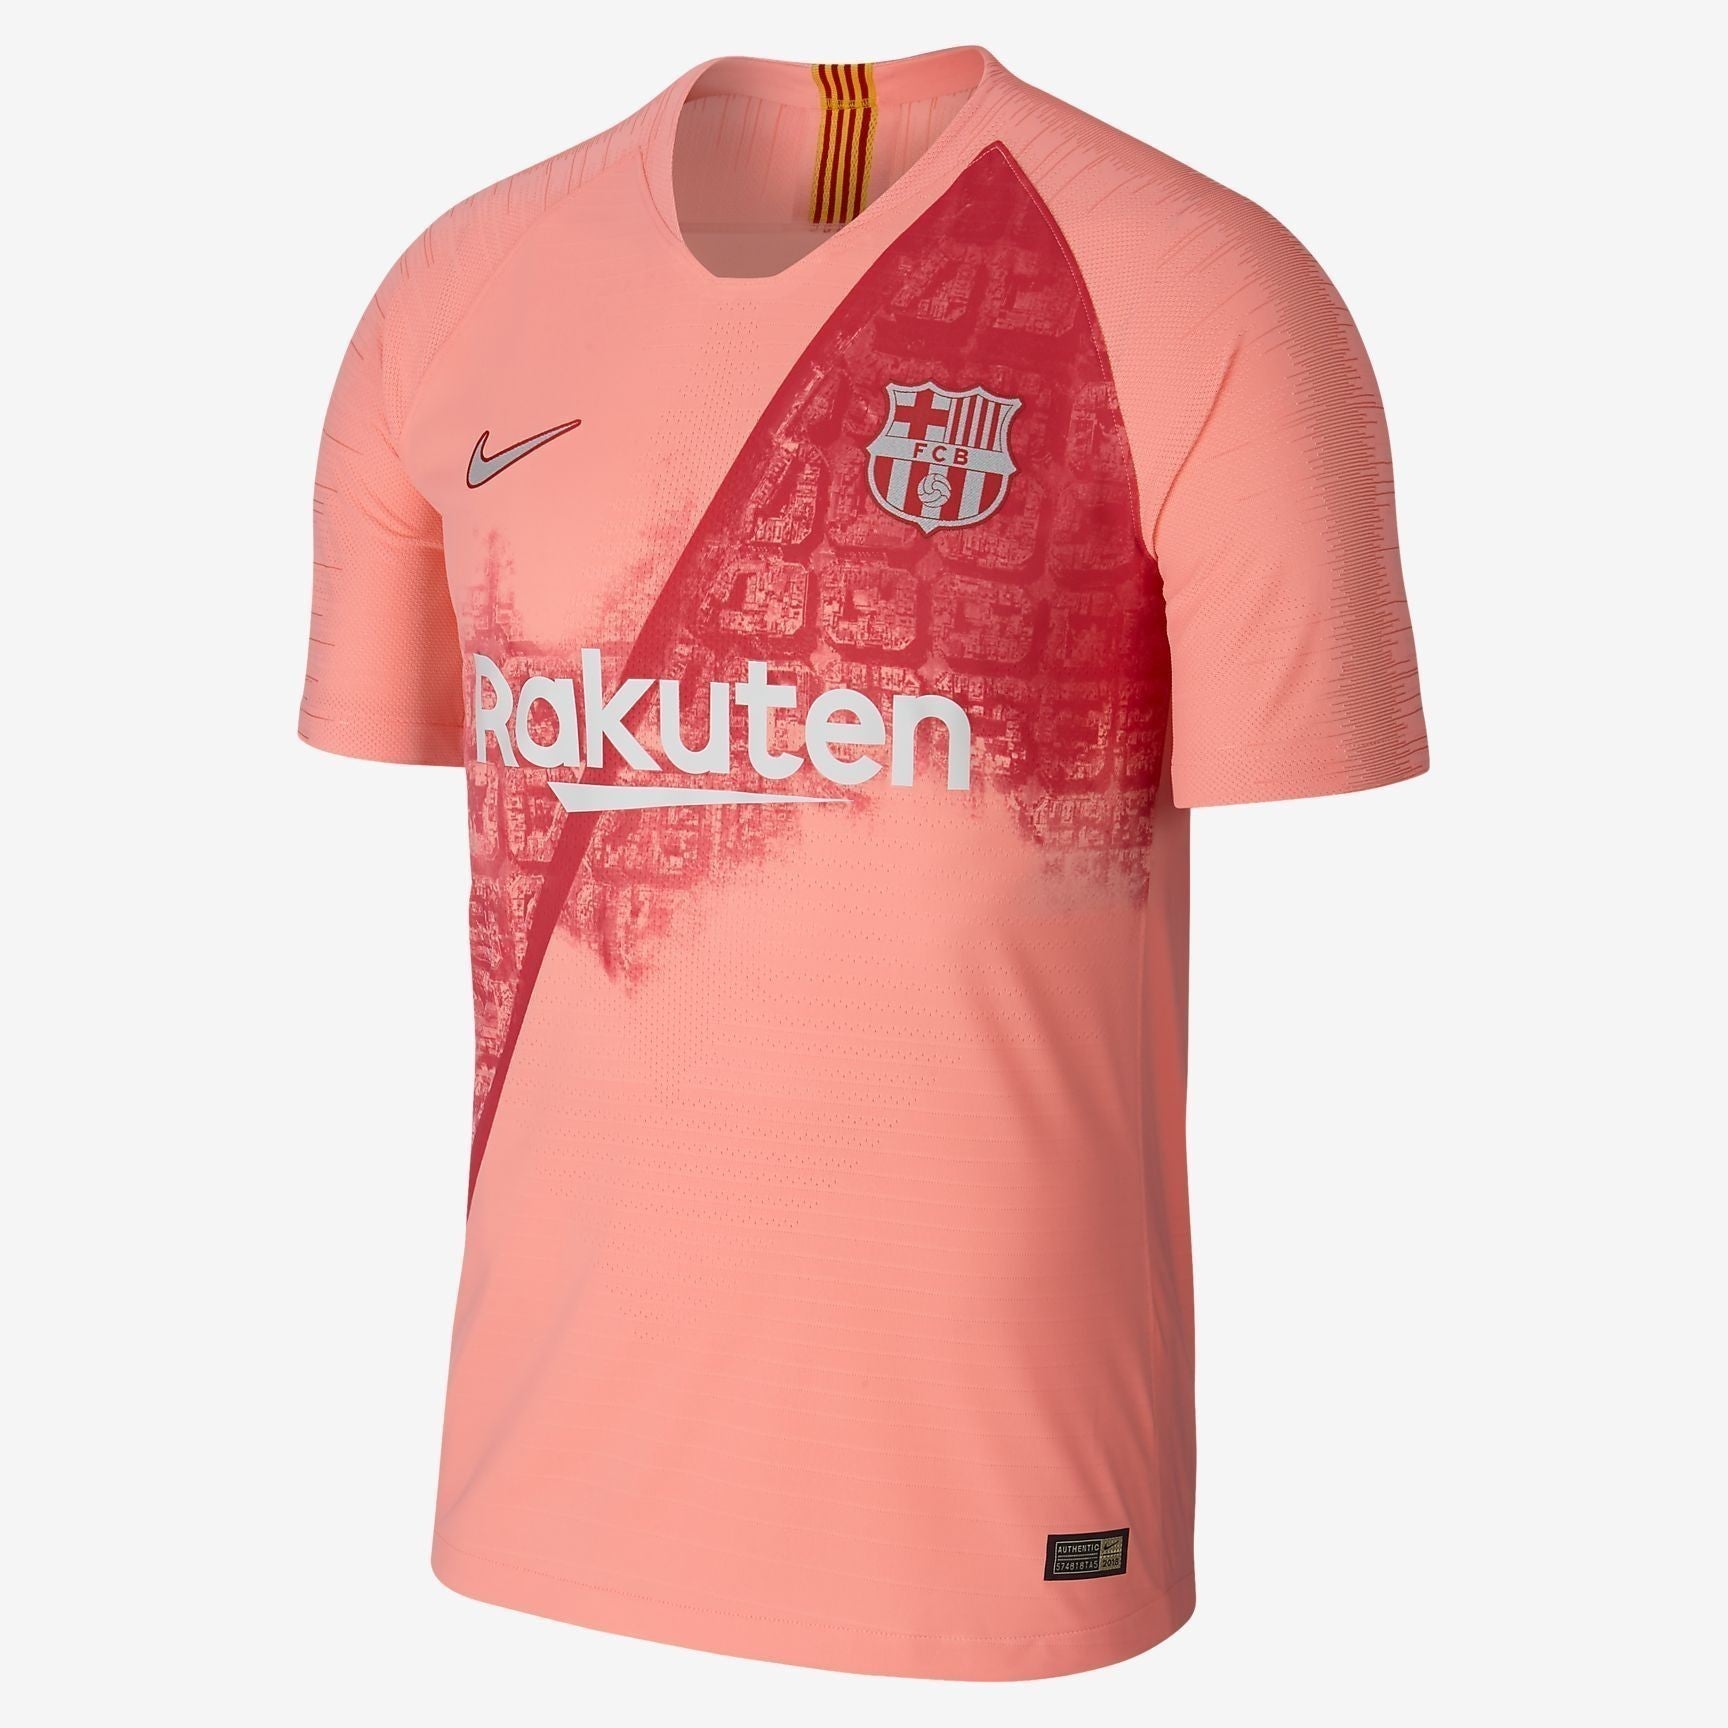 atomic pink nike shirt